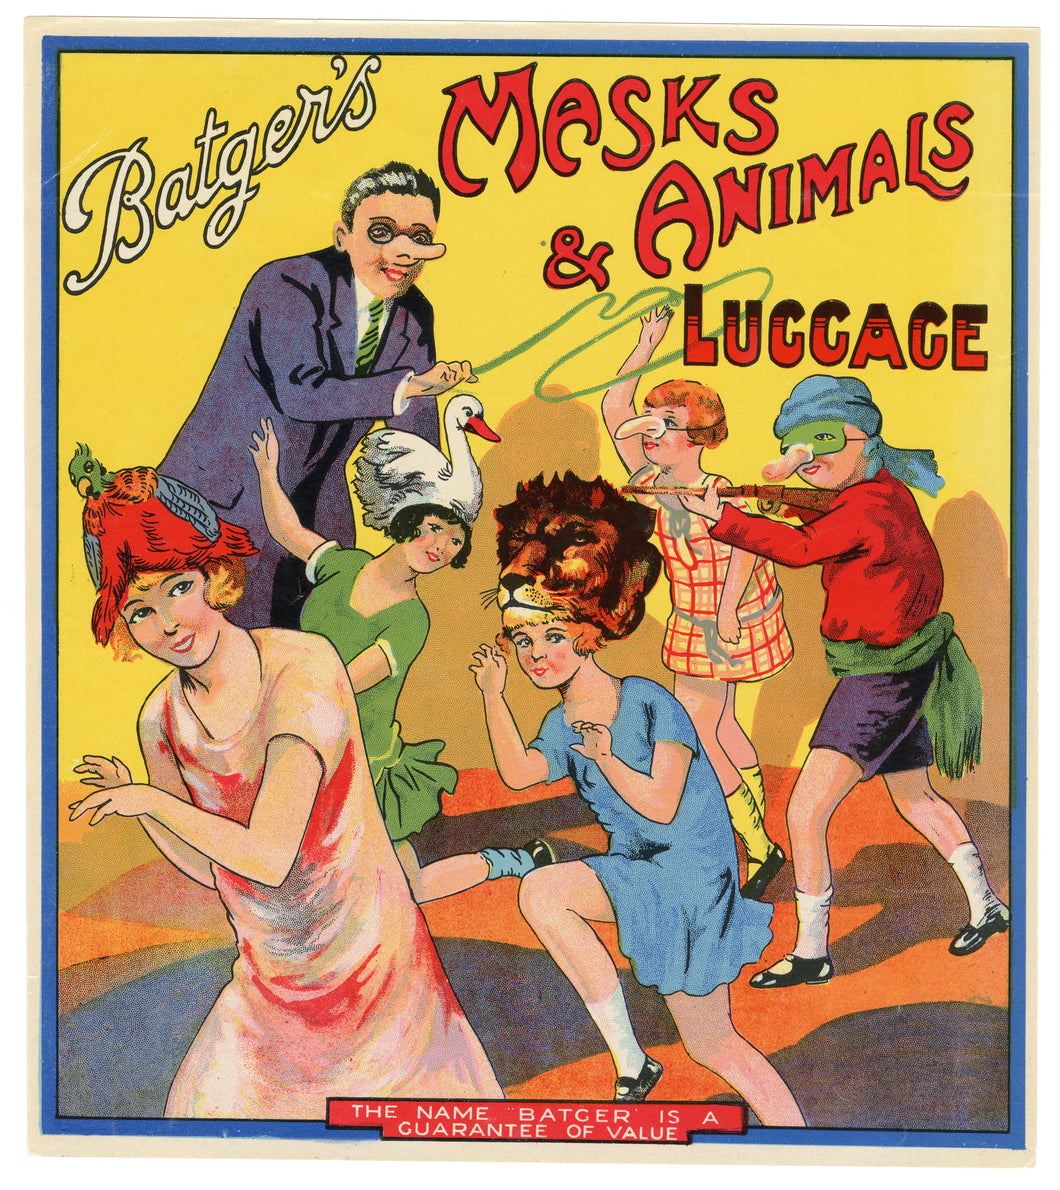 Antique, Unused MASKS & ANIMAL LUGGAGE Novelty Label, Batger, Masquerade